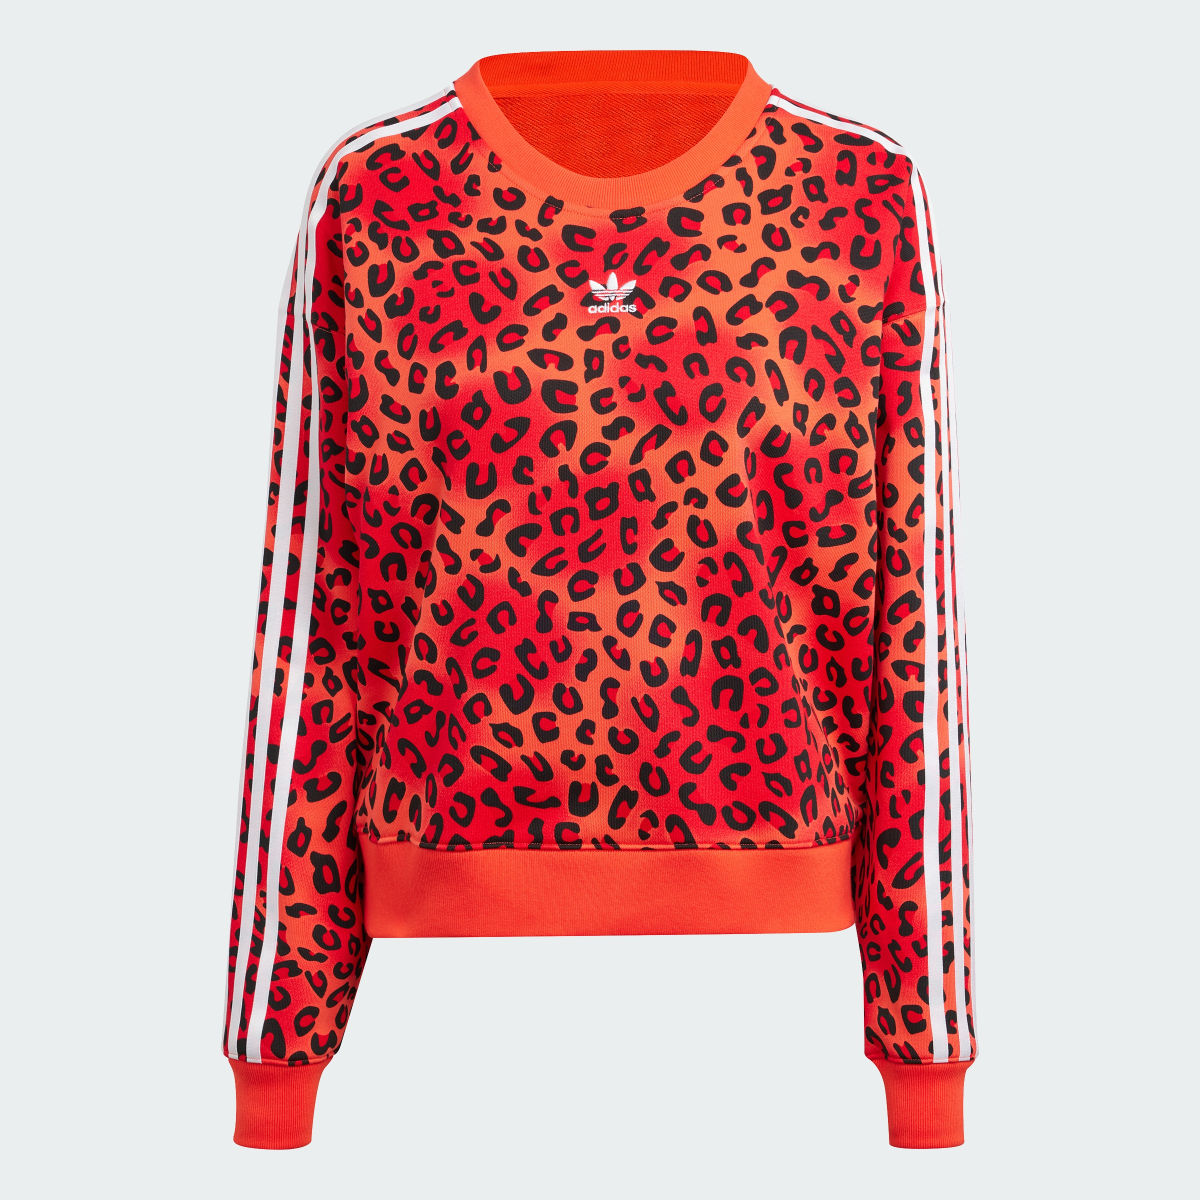 Adidas Originals Leopard Luxe Trefoil Sweatshirt. 5